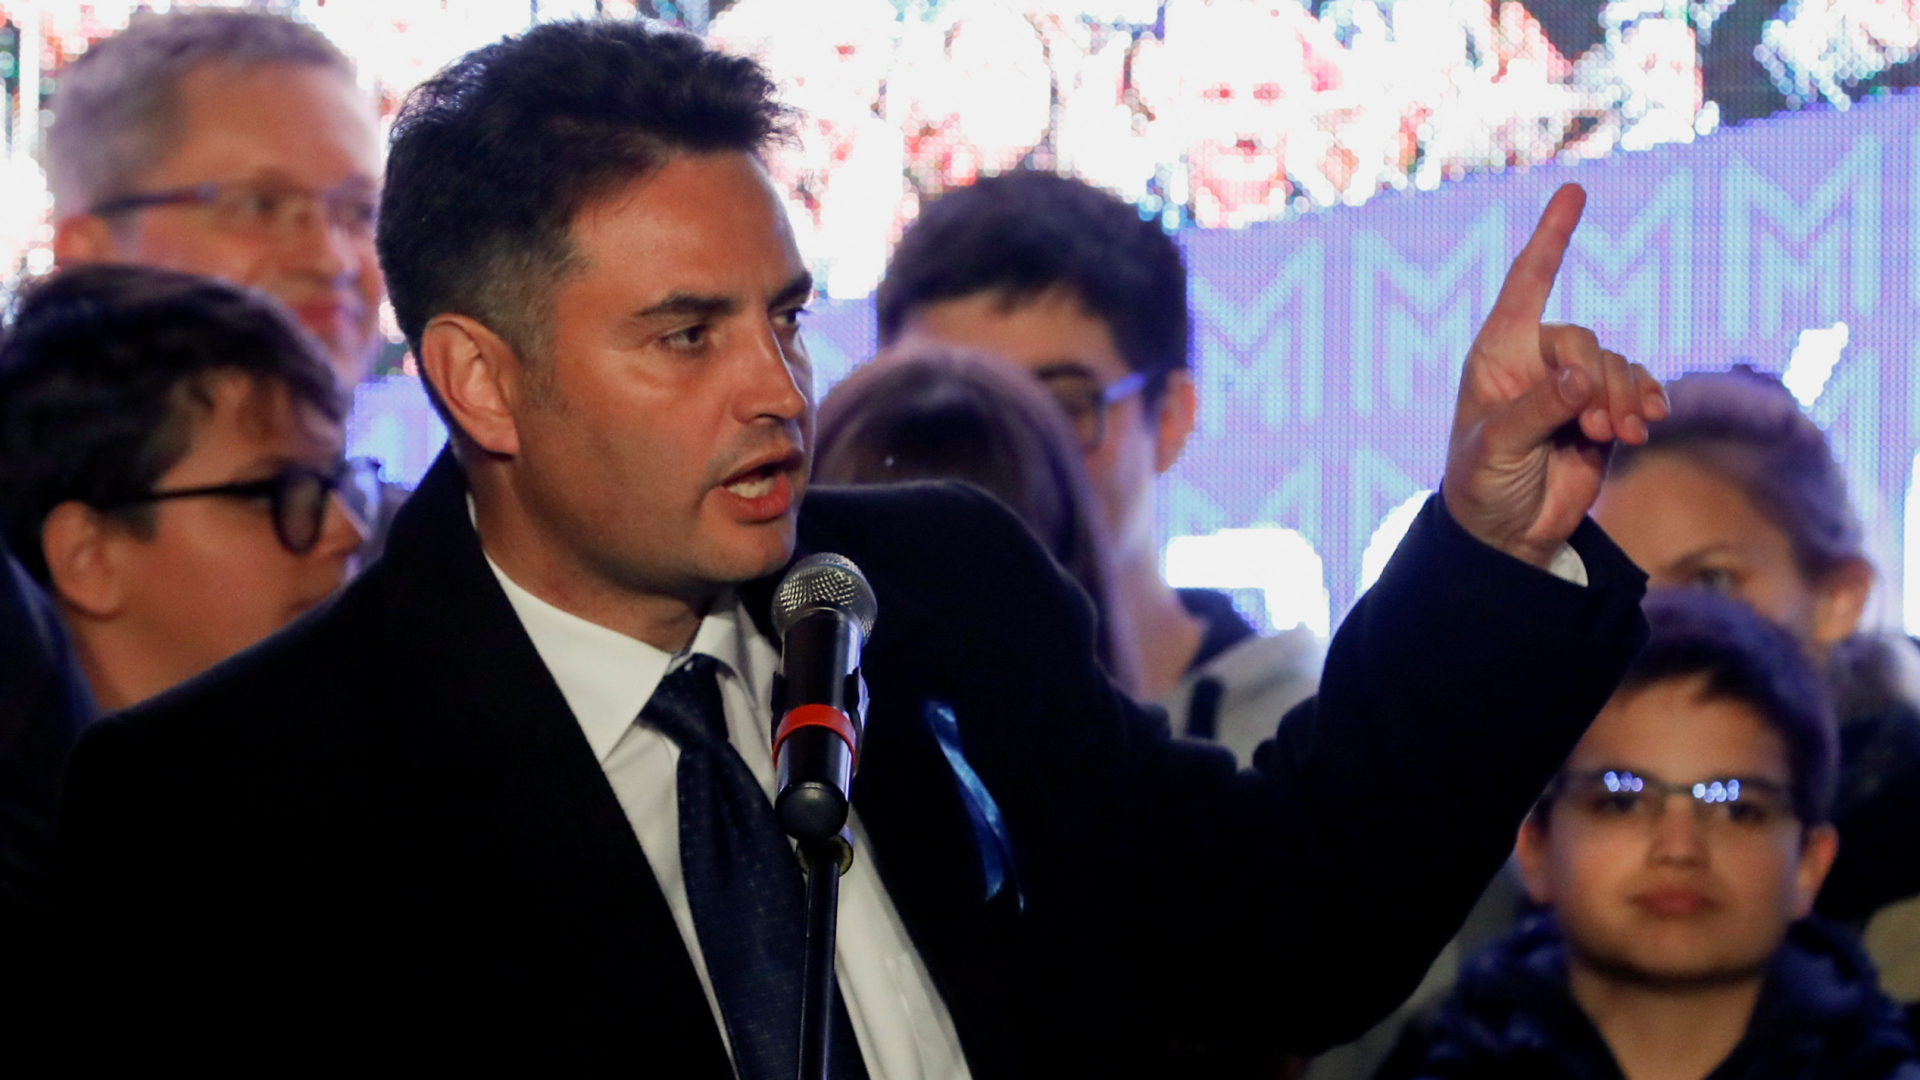 Peter Marki-Zay spricht zu Anhängern, nachdem er zum Oppositionskandidaten für die ungarische Parlamentswahl 2022 gewählt wurde. | REUTERS